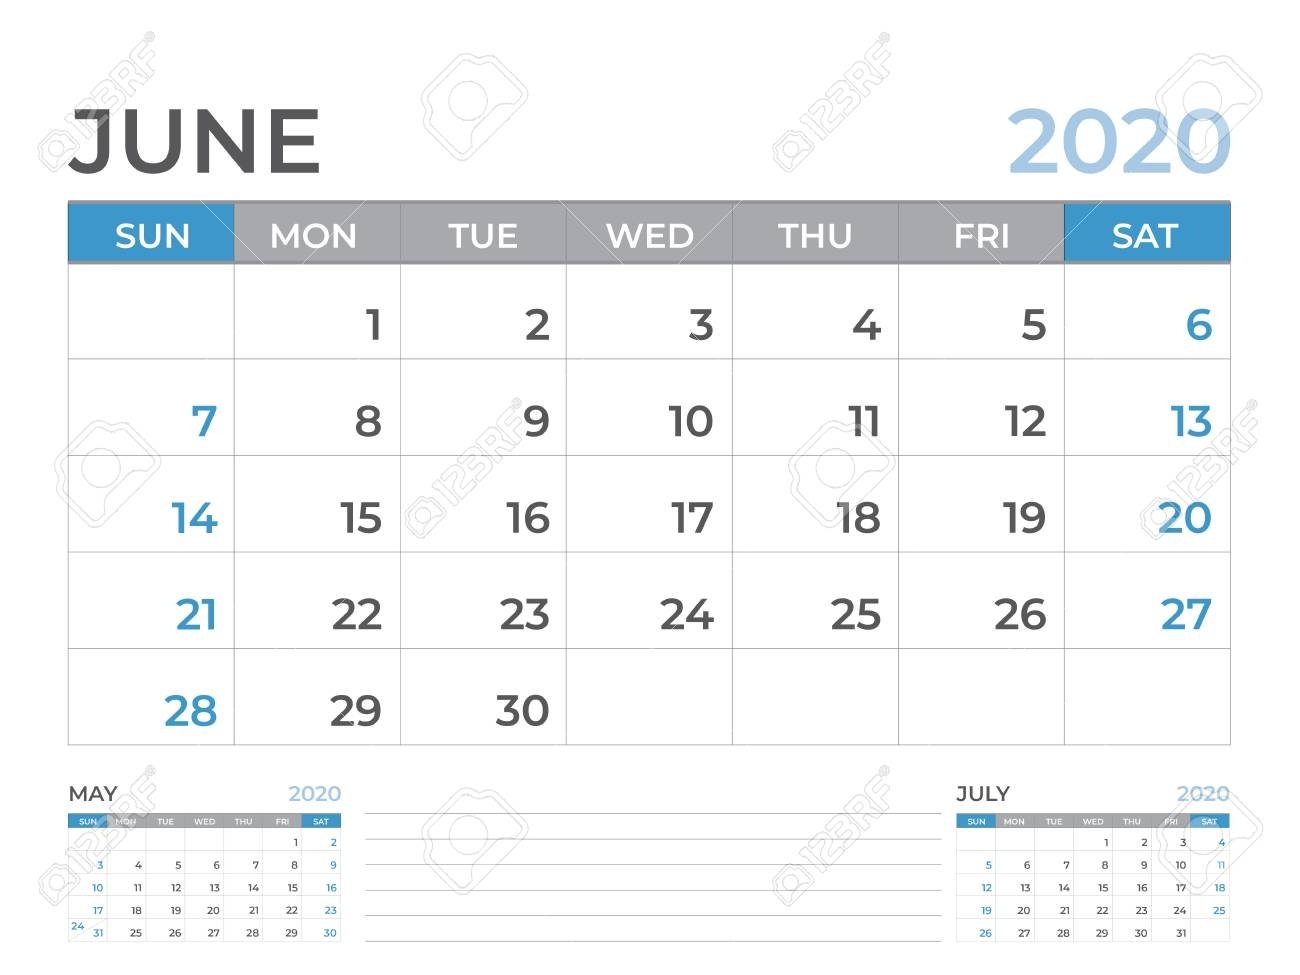 June 2020 Calendar Template, Desk Calendar Layout Size 8 X 6.. 6 X 6 Calendar Template